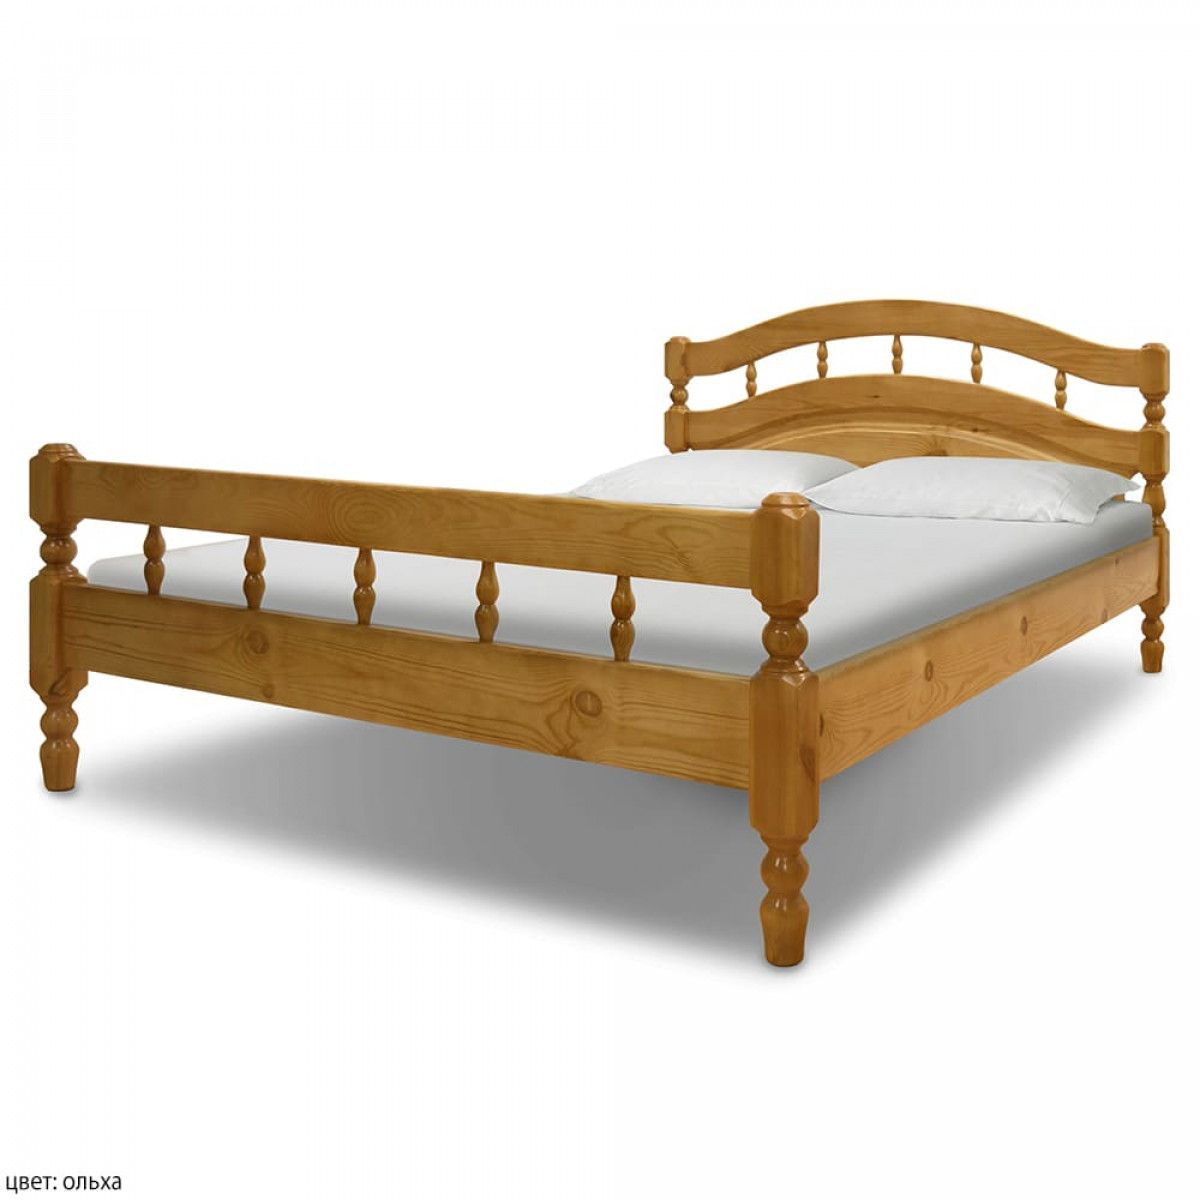 Купить деревянную кровать недорого. Кровать ВМК-Шале Хельга 1. Кровать ВМК-Шале Хельга 2. Кровать ВМК-Шале Скандинавия.